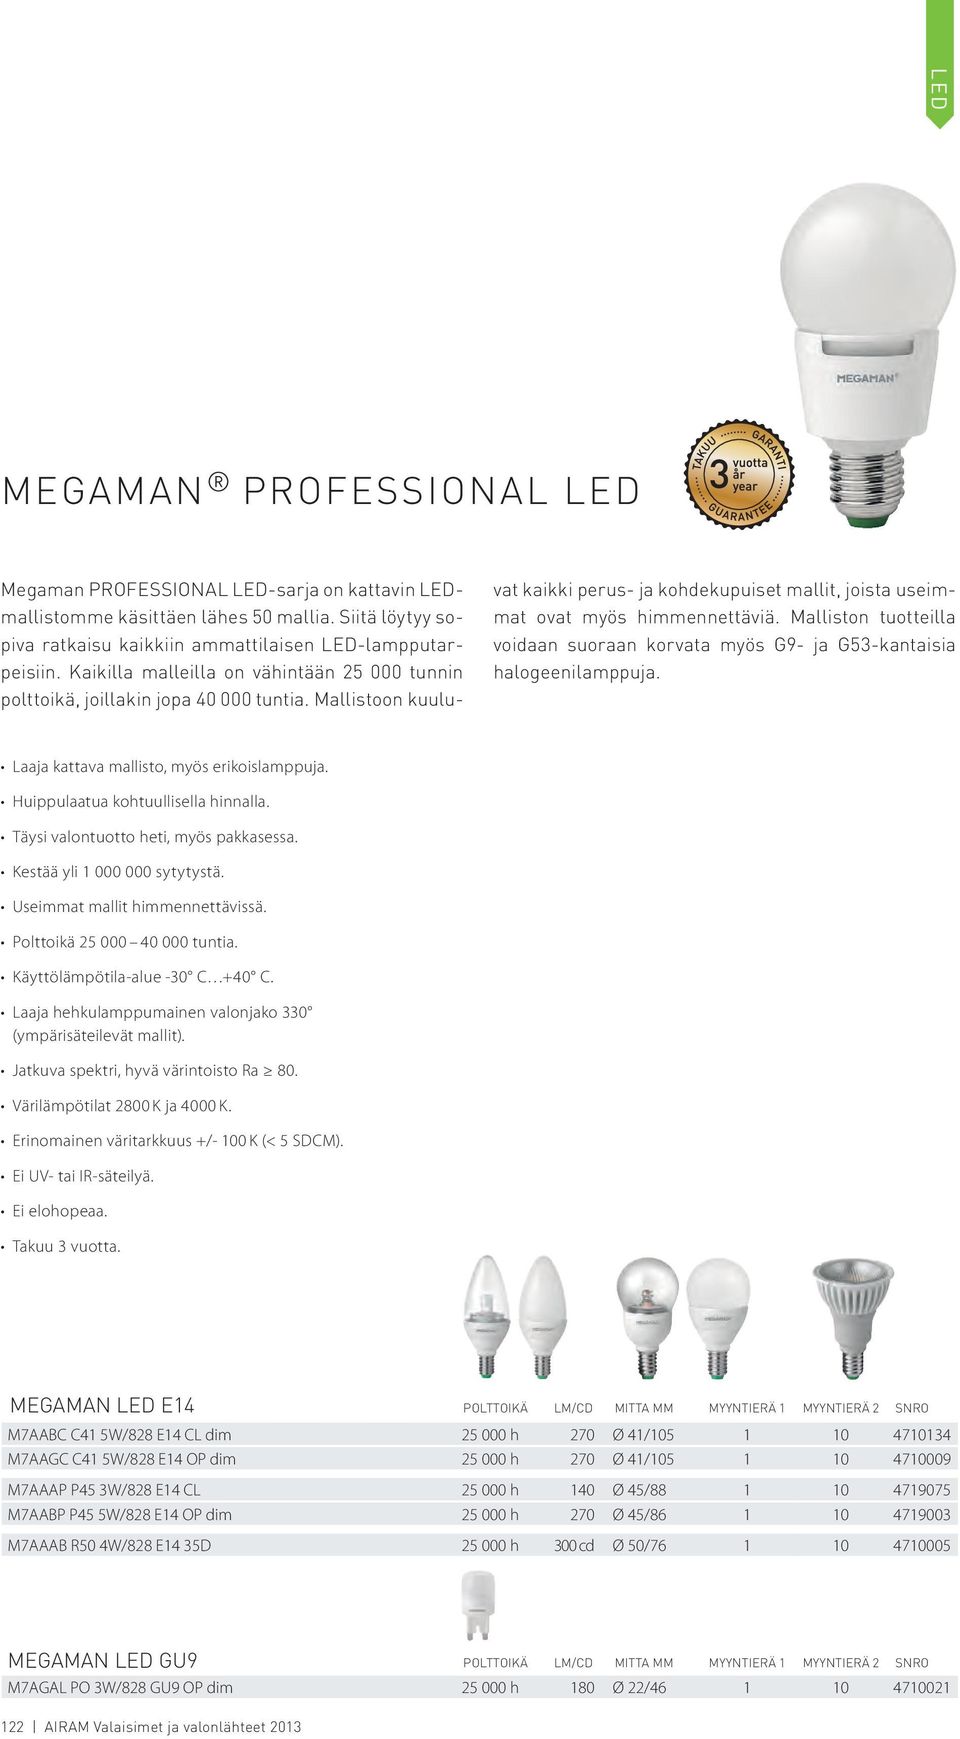 Malliston tuotteilla voidaan suoraan korvata myös G9- ja G53-kantaisia halogeenilamppuja. Laaja kattava mallisto, myös erikoislamppuja. Huippulaatua kohtuullisella hinnalla.